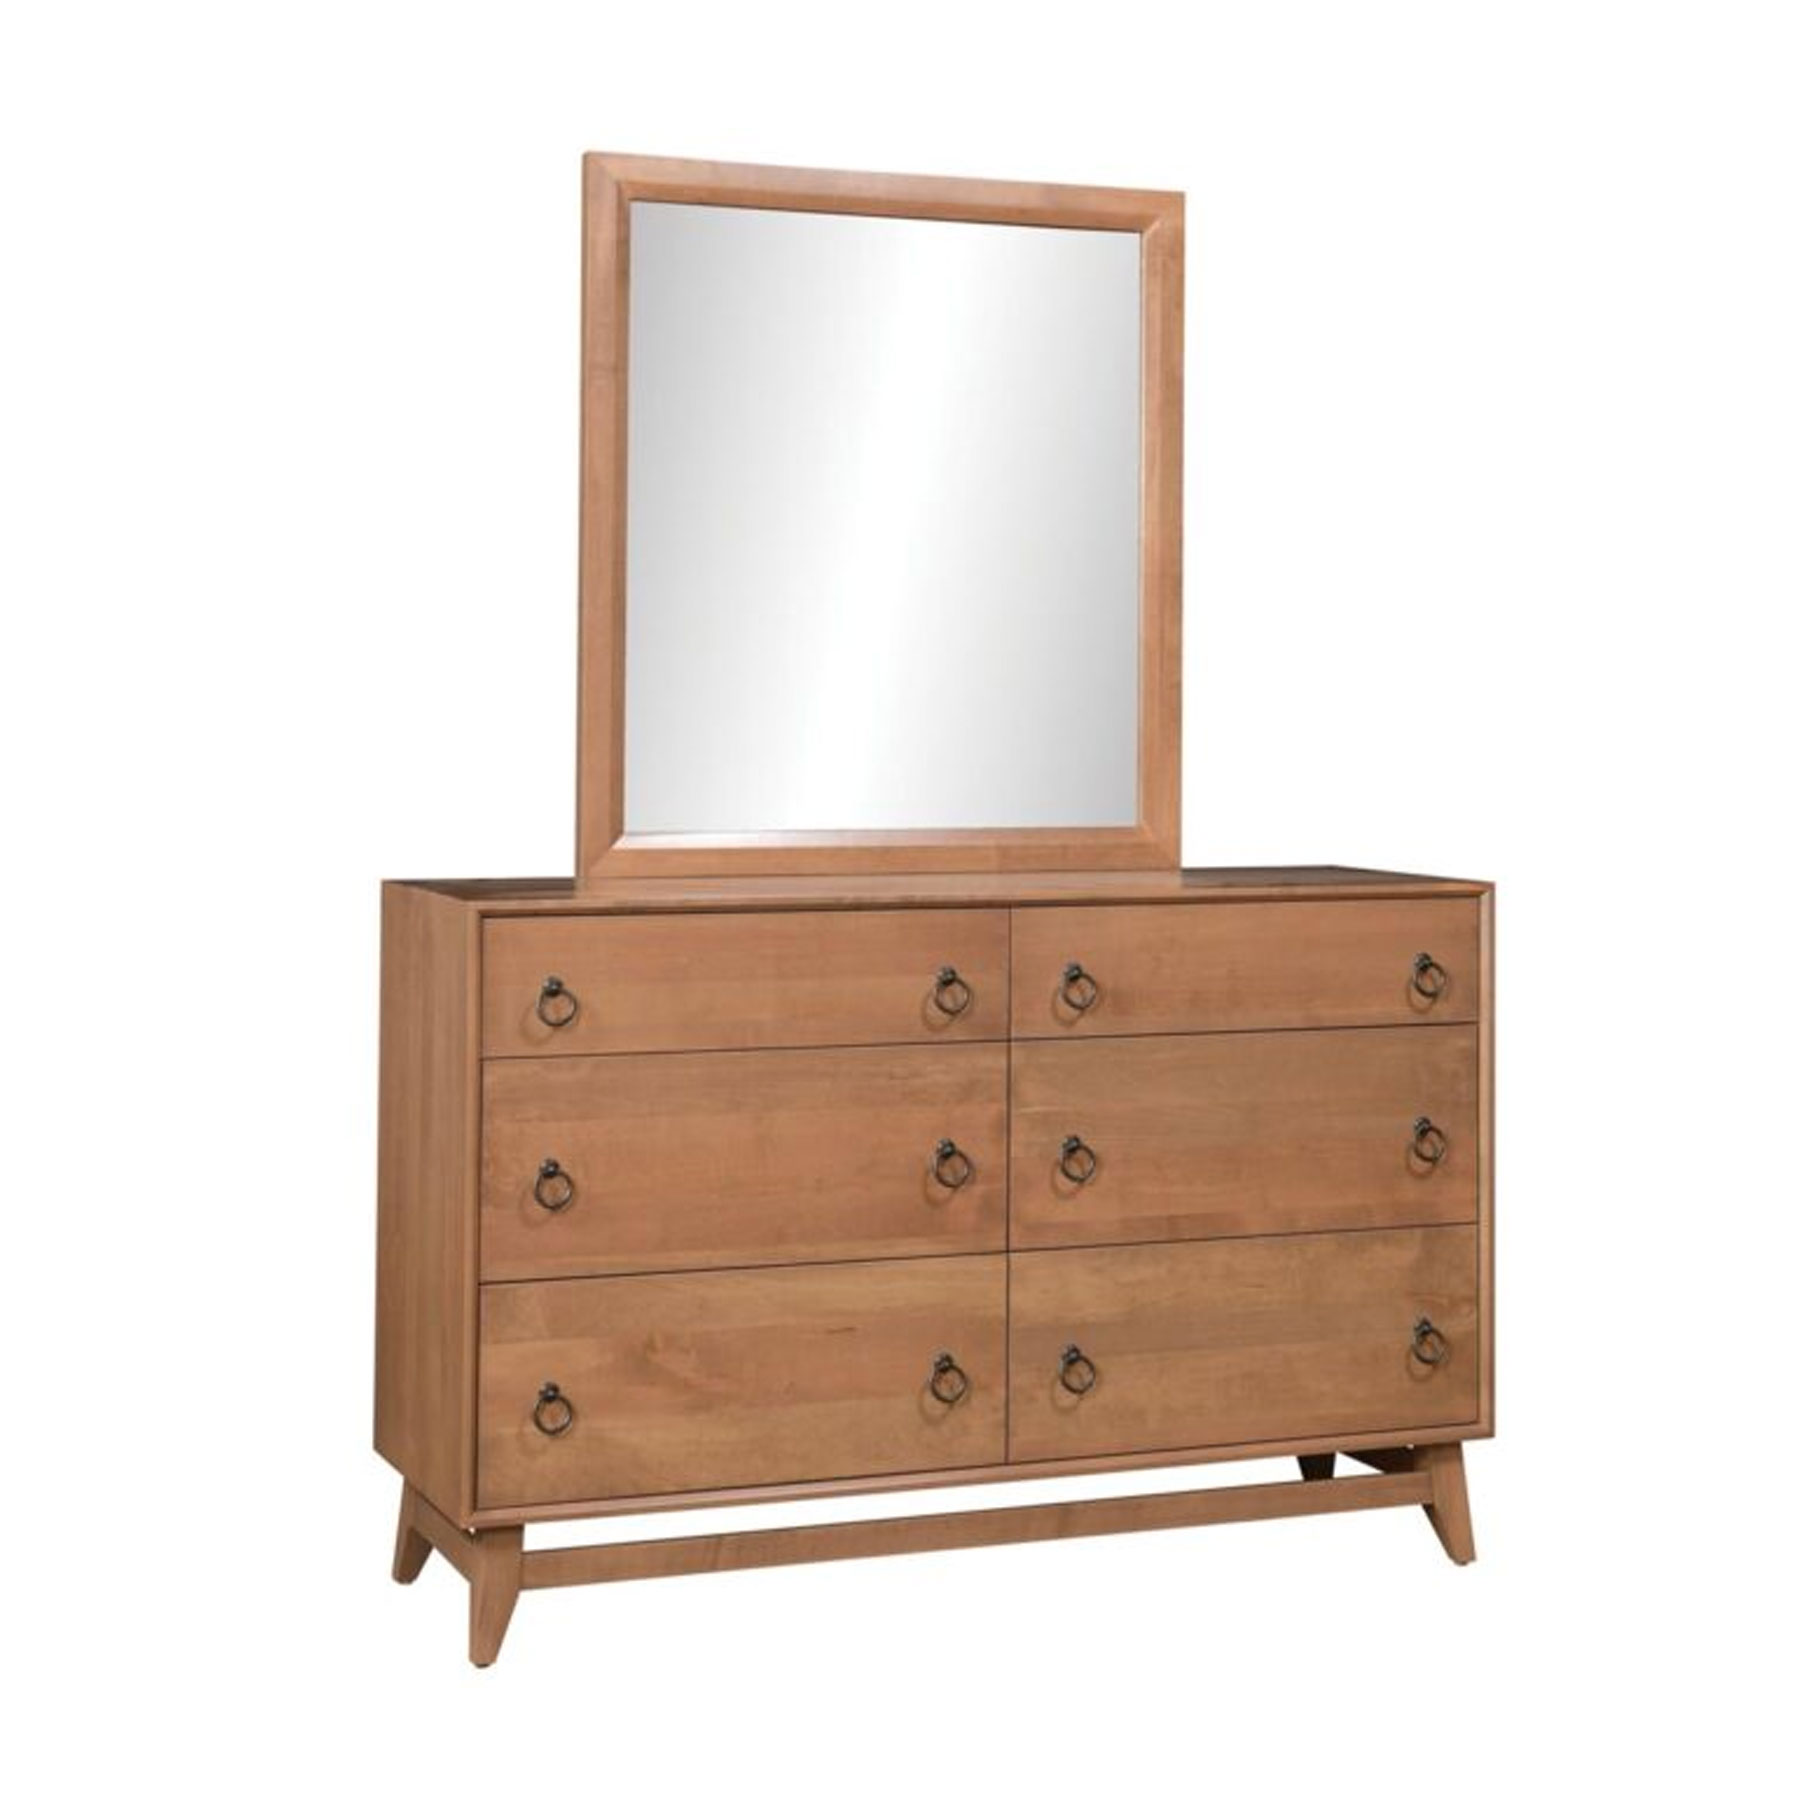 Allentown Dresser and Mirror